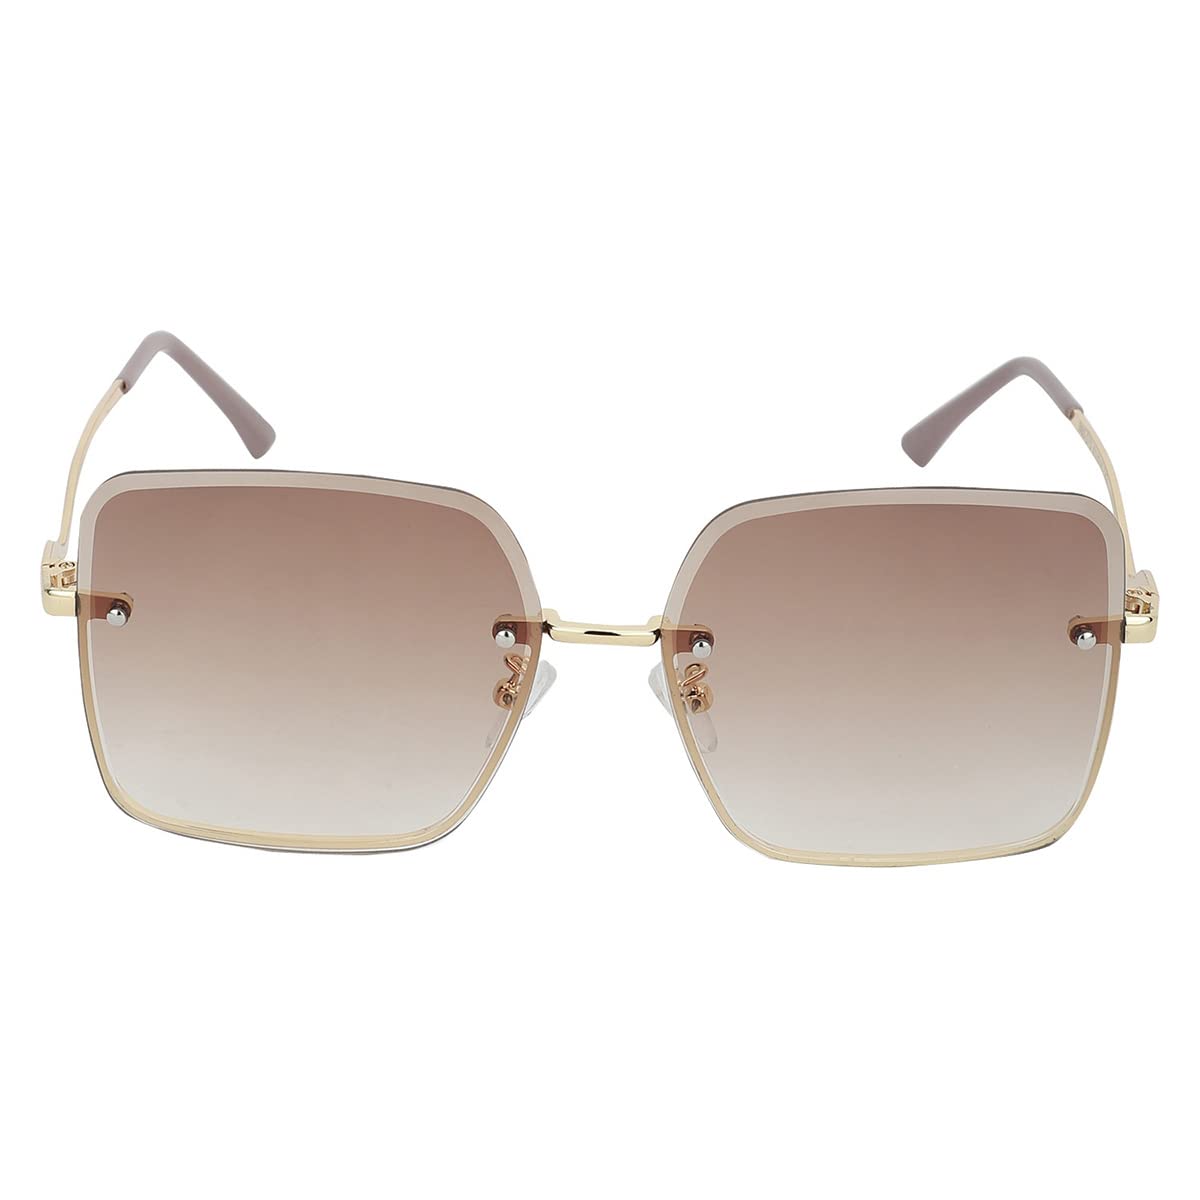 Carlton London Women UV Protected Lens Oversized Sunglasses 